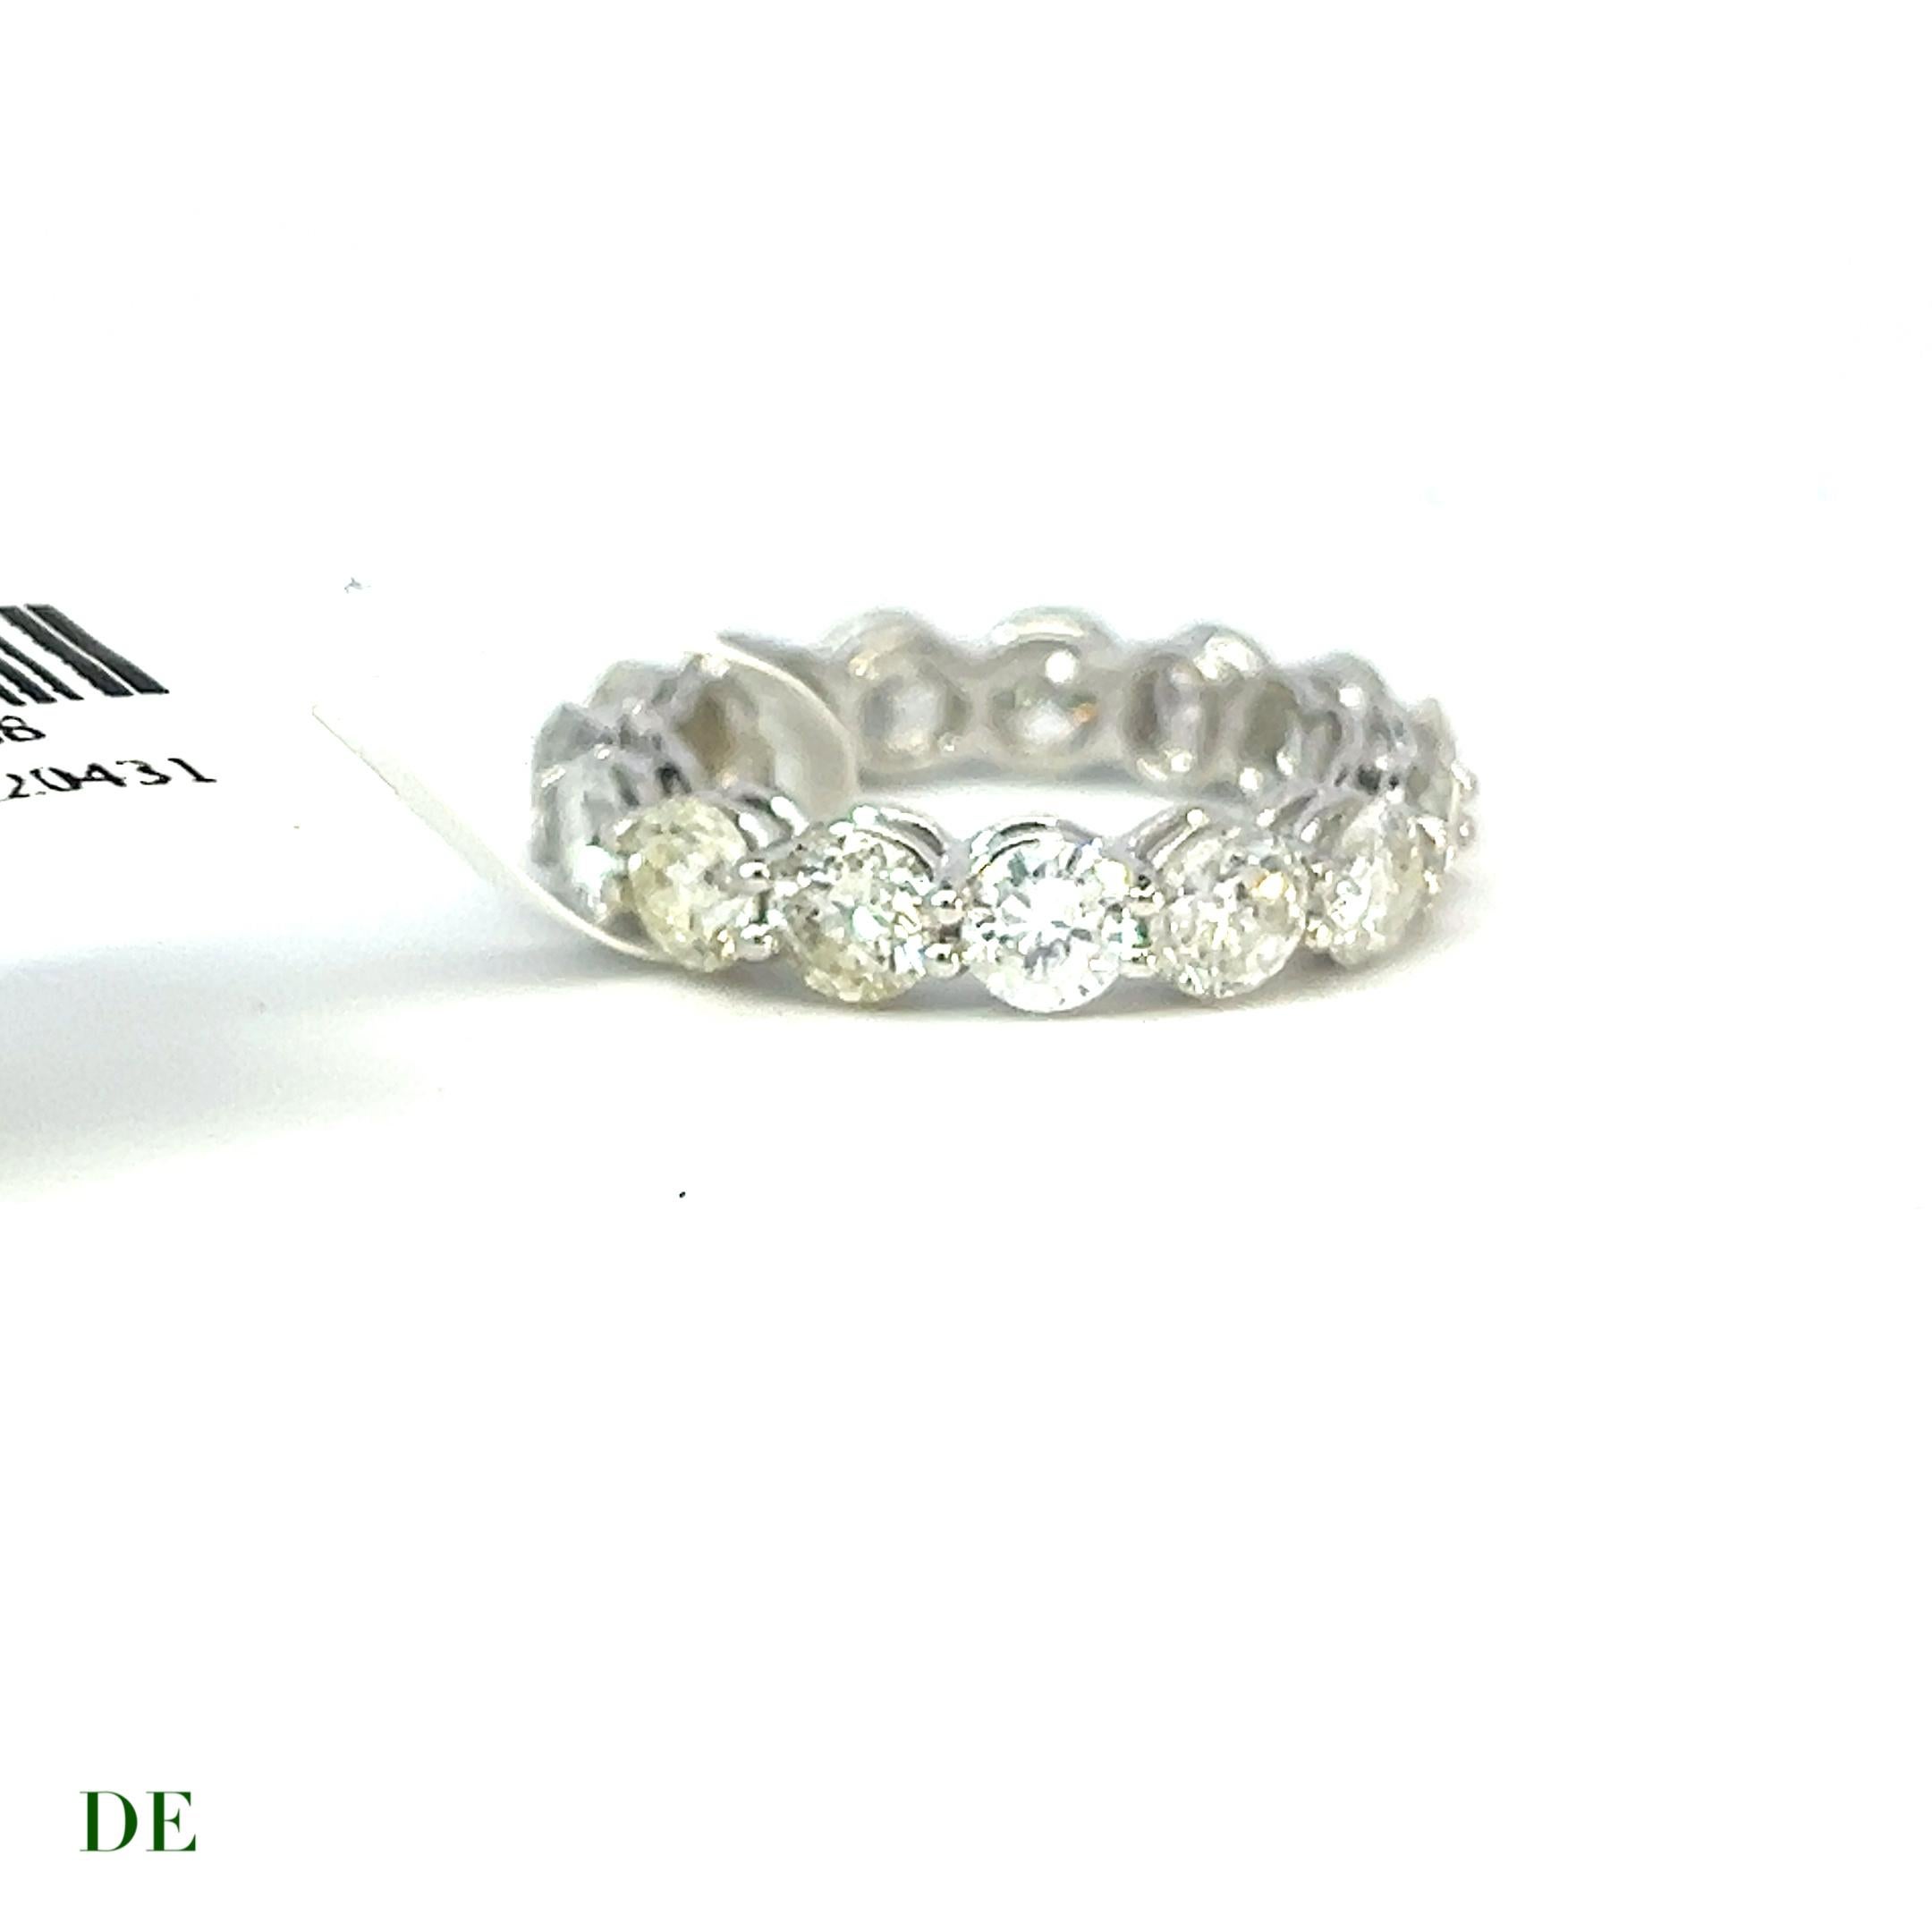 Classic 14k Gold 4.15 Carat Elegance Band Diamond Ring

Voici la bague classique en or 14k de 4,15 carats à diamant Elegant Band, un véritable chef-d'œuvre de luxe et d'éclat. Cette bague extraordinaire est conçue pour faire chavirer les cœurs et